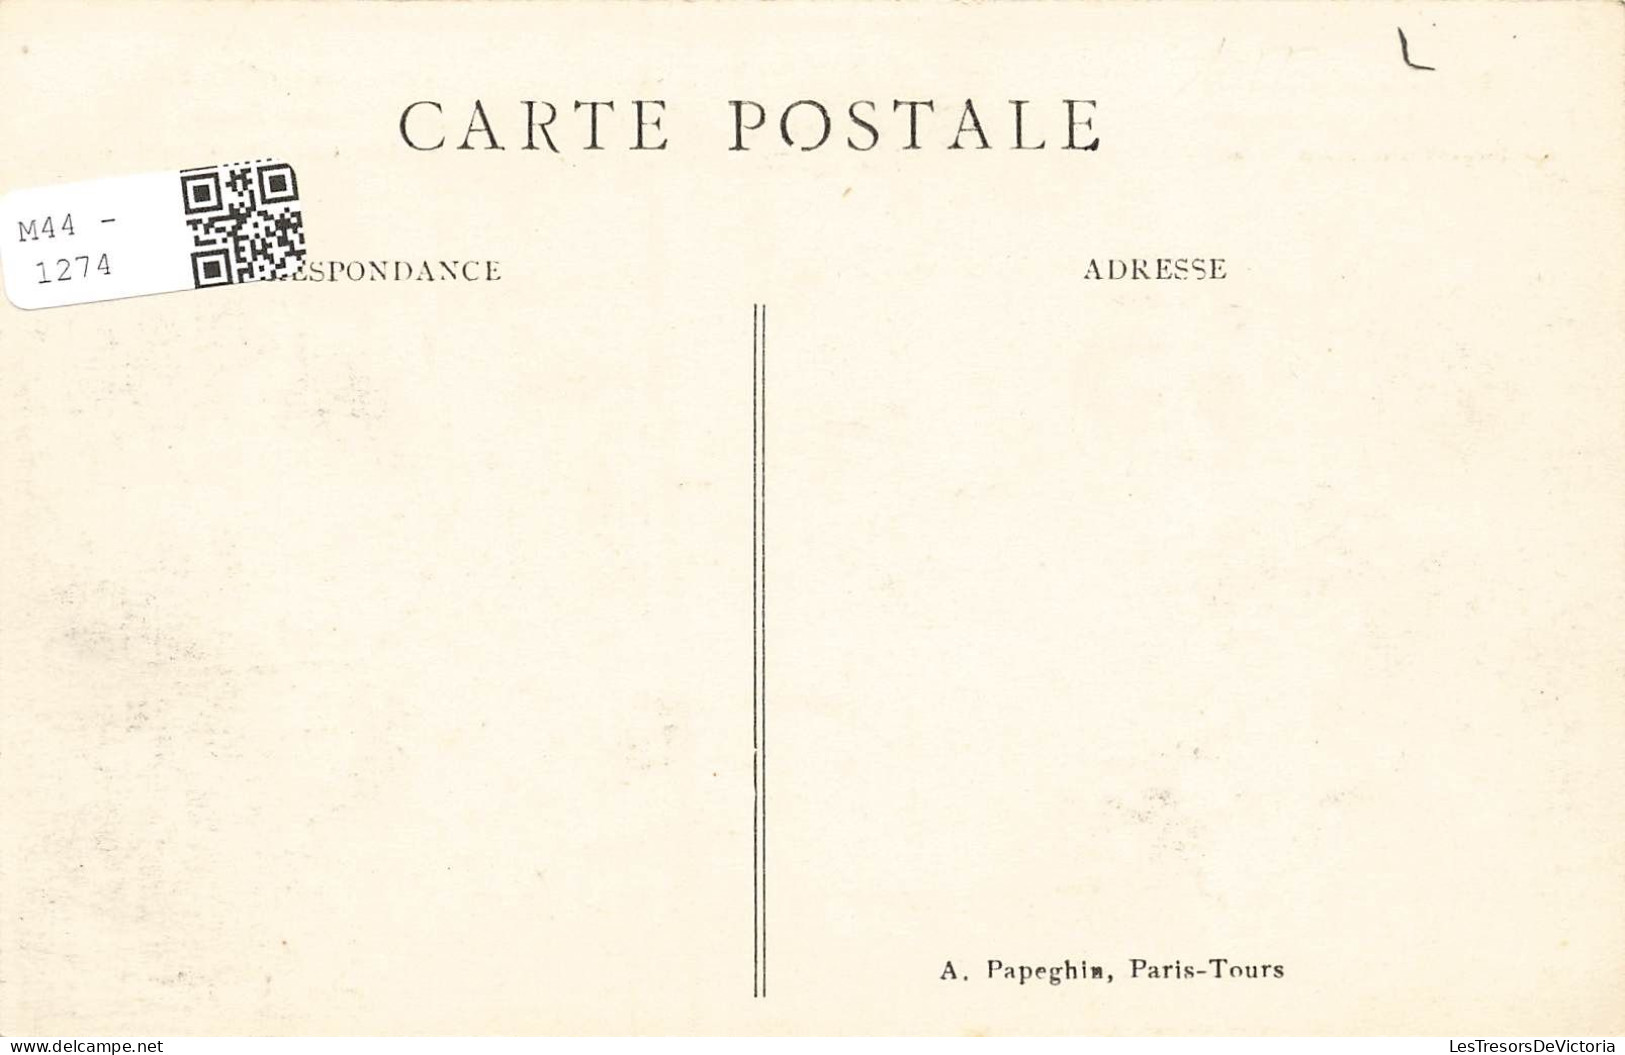 FRANCE - Paris - Vue Sur L'Arc De Triomphe Et La Tombe Du Soldat Inconnu - A P - Animé - Carte Postale Ancienne - Triumphbogen